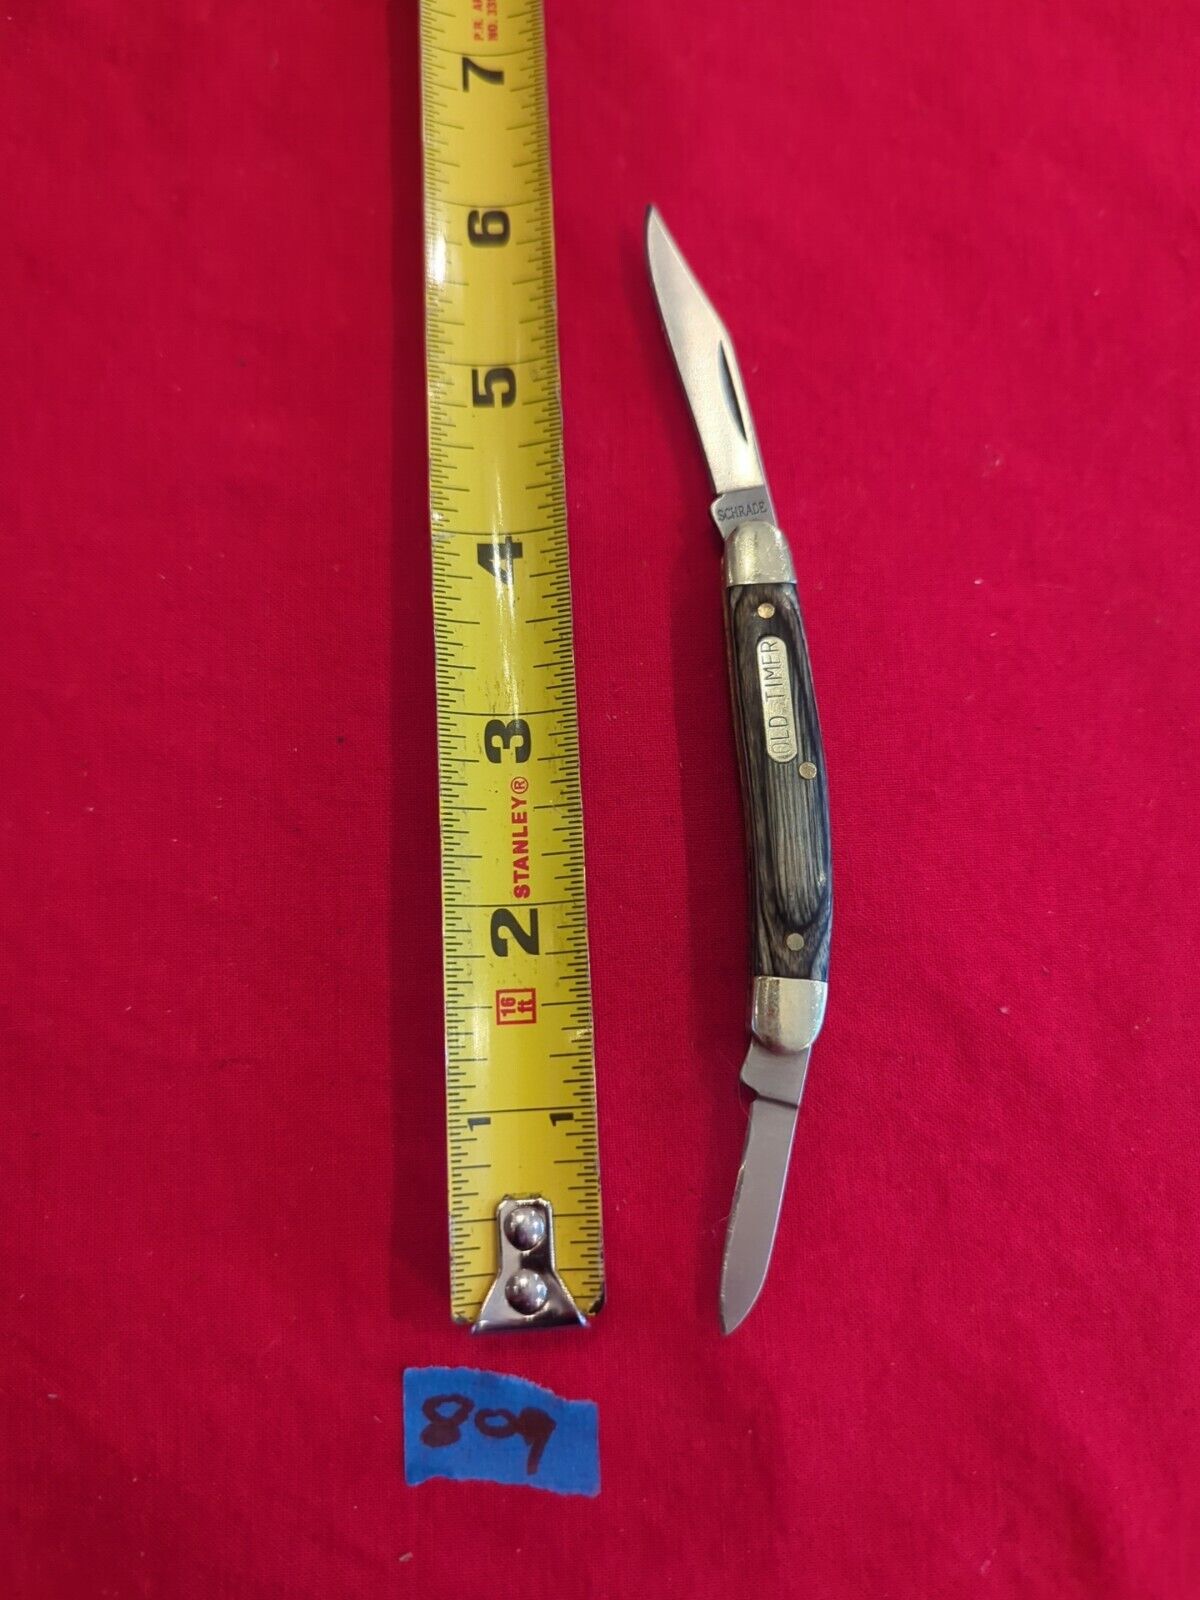 Schrade 1143414 Pocket Knife